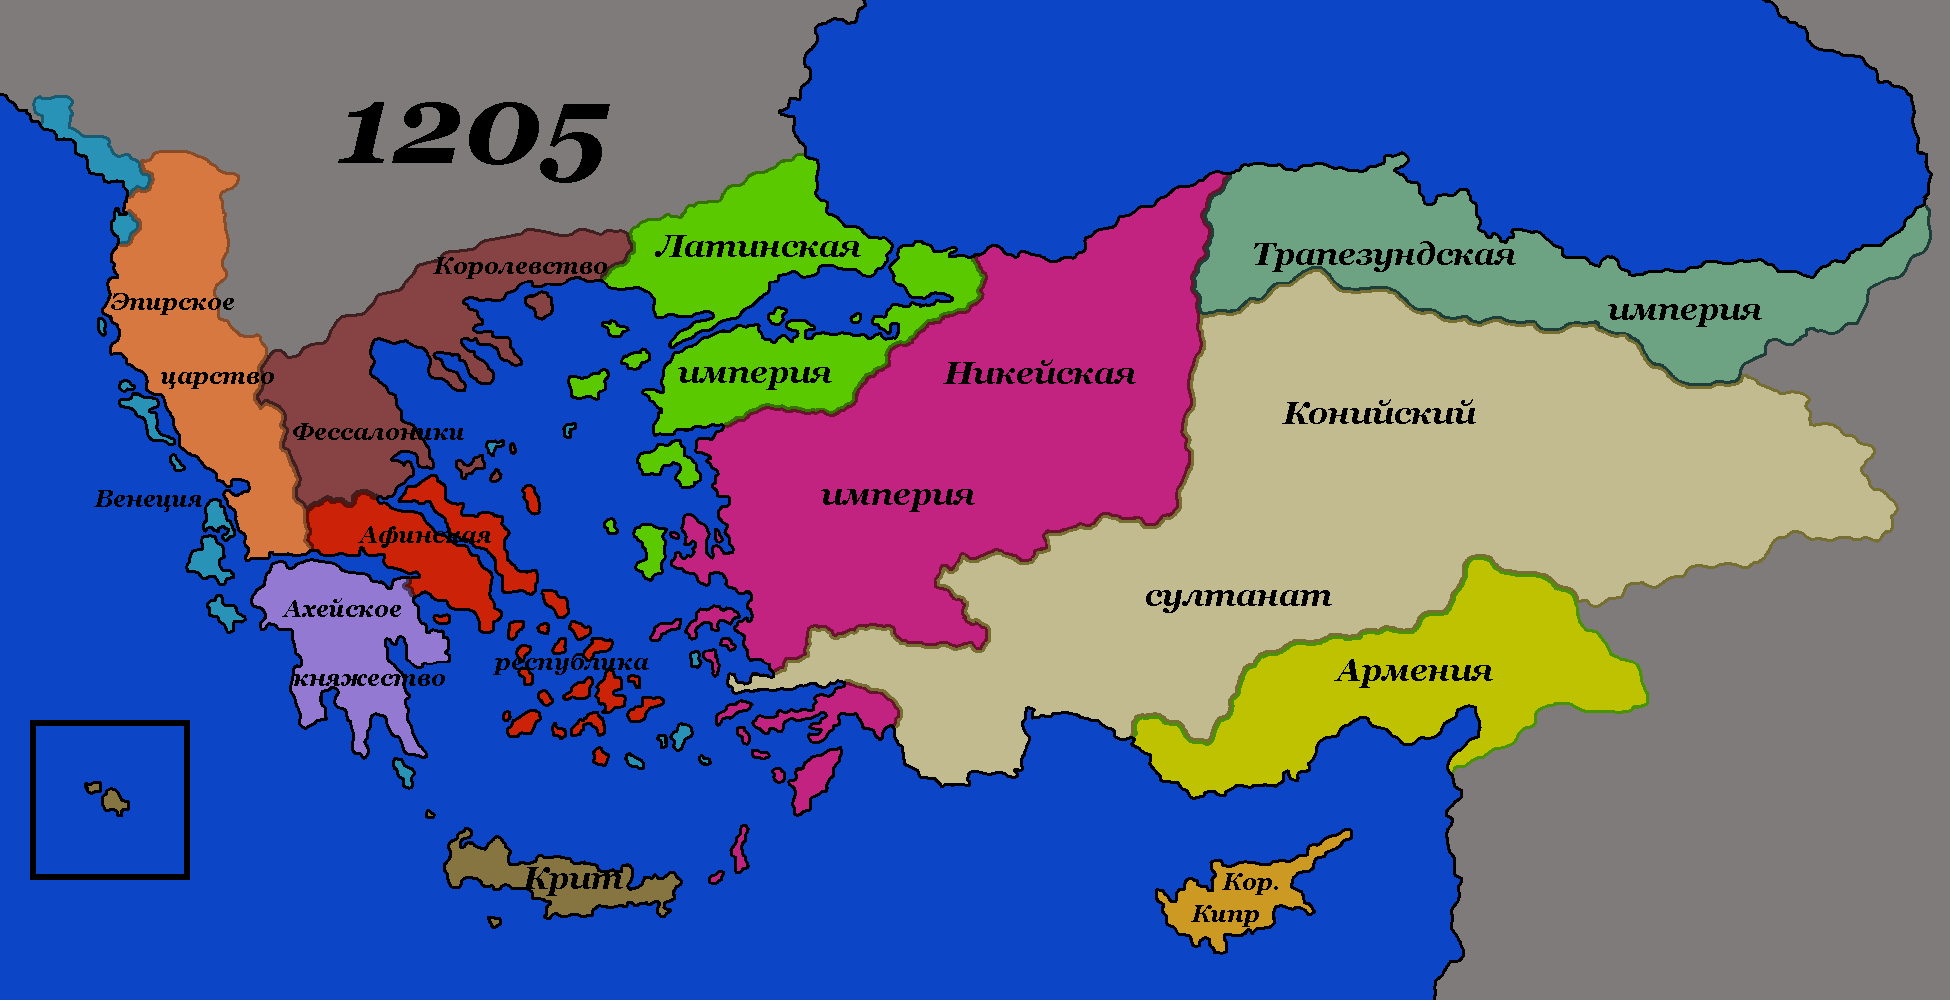 Падение византийской империи